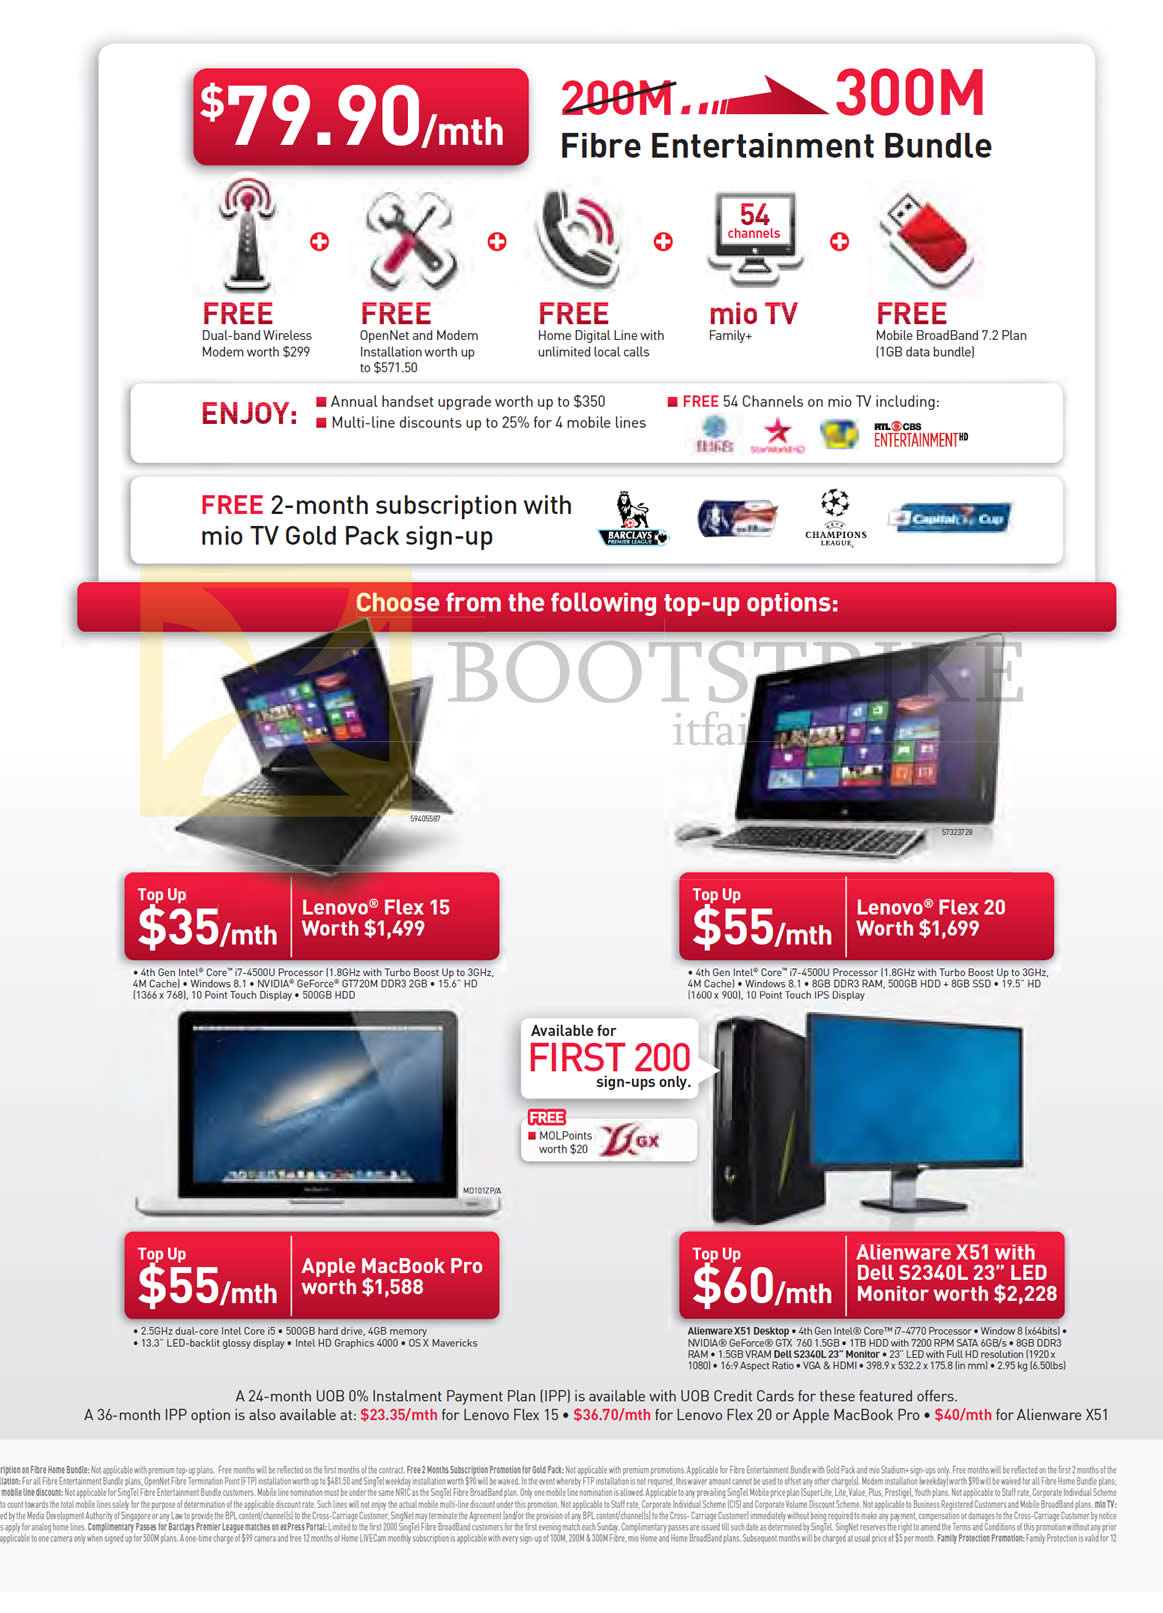 SITEX 2013 price list image brochure of Singtel 79.90 300mbps Fibre Entertainment Bundle, Notebooks Lenovo Flex 15, Flex 20, Apple Macbook Pro, Dell Alienware X51 Desktop PC